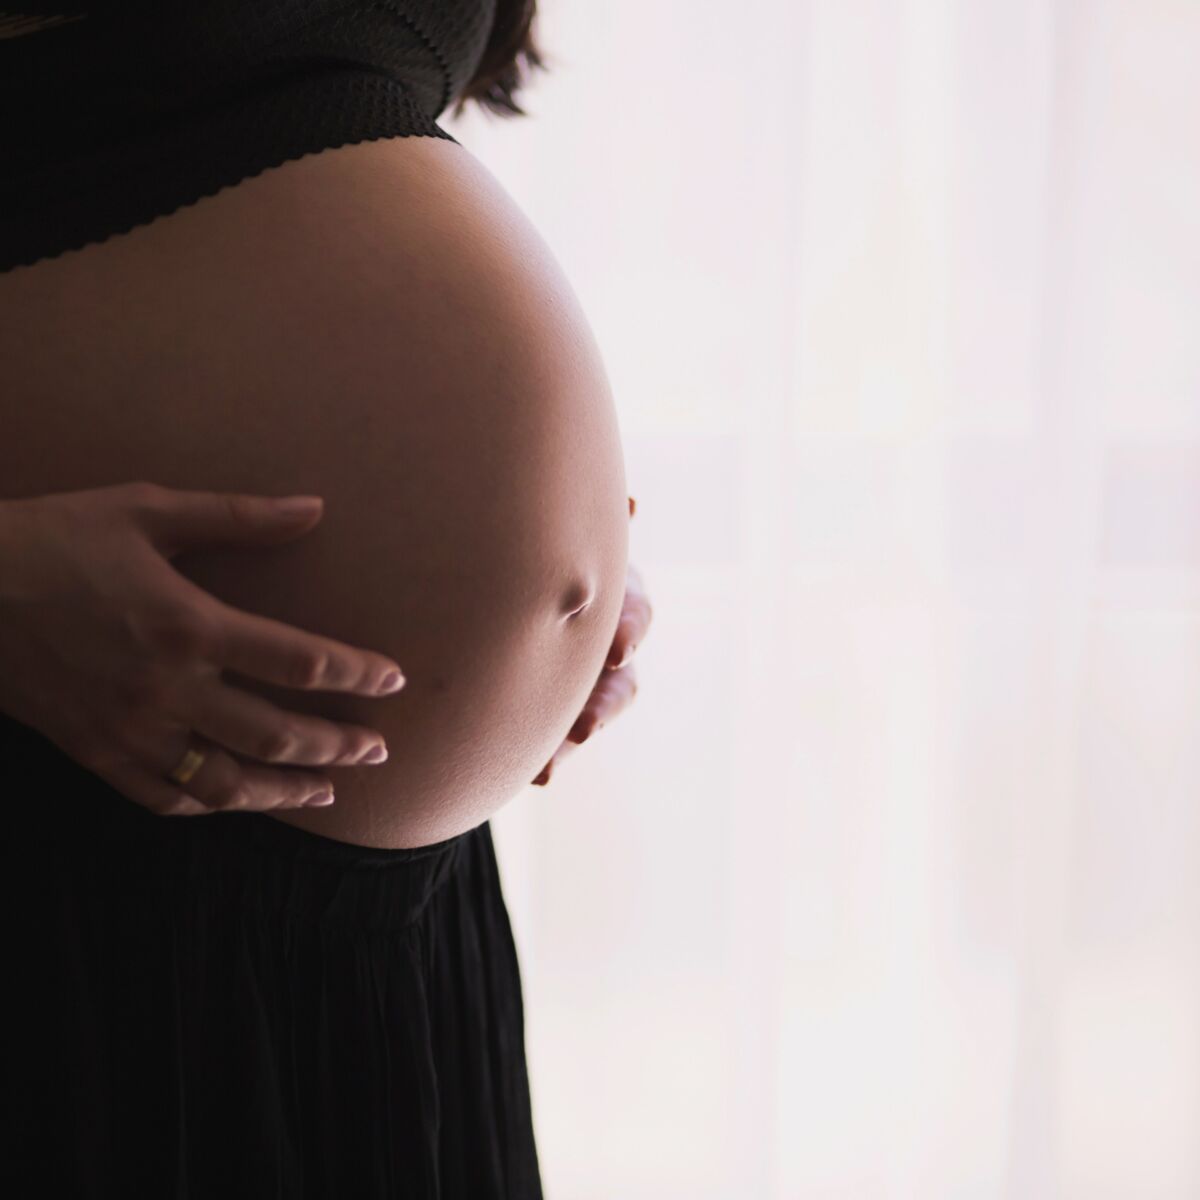 Quels sont les principaux signes et symptômes de la grossesse ?